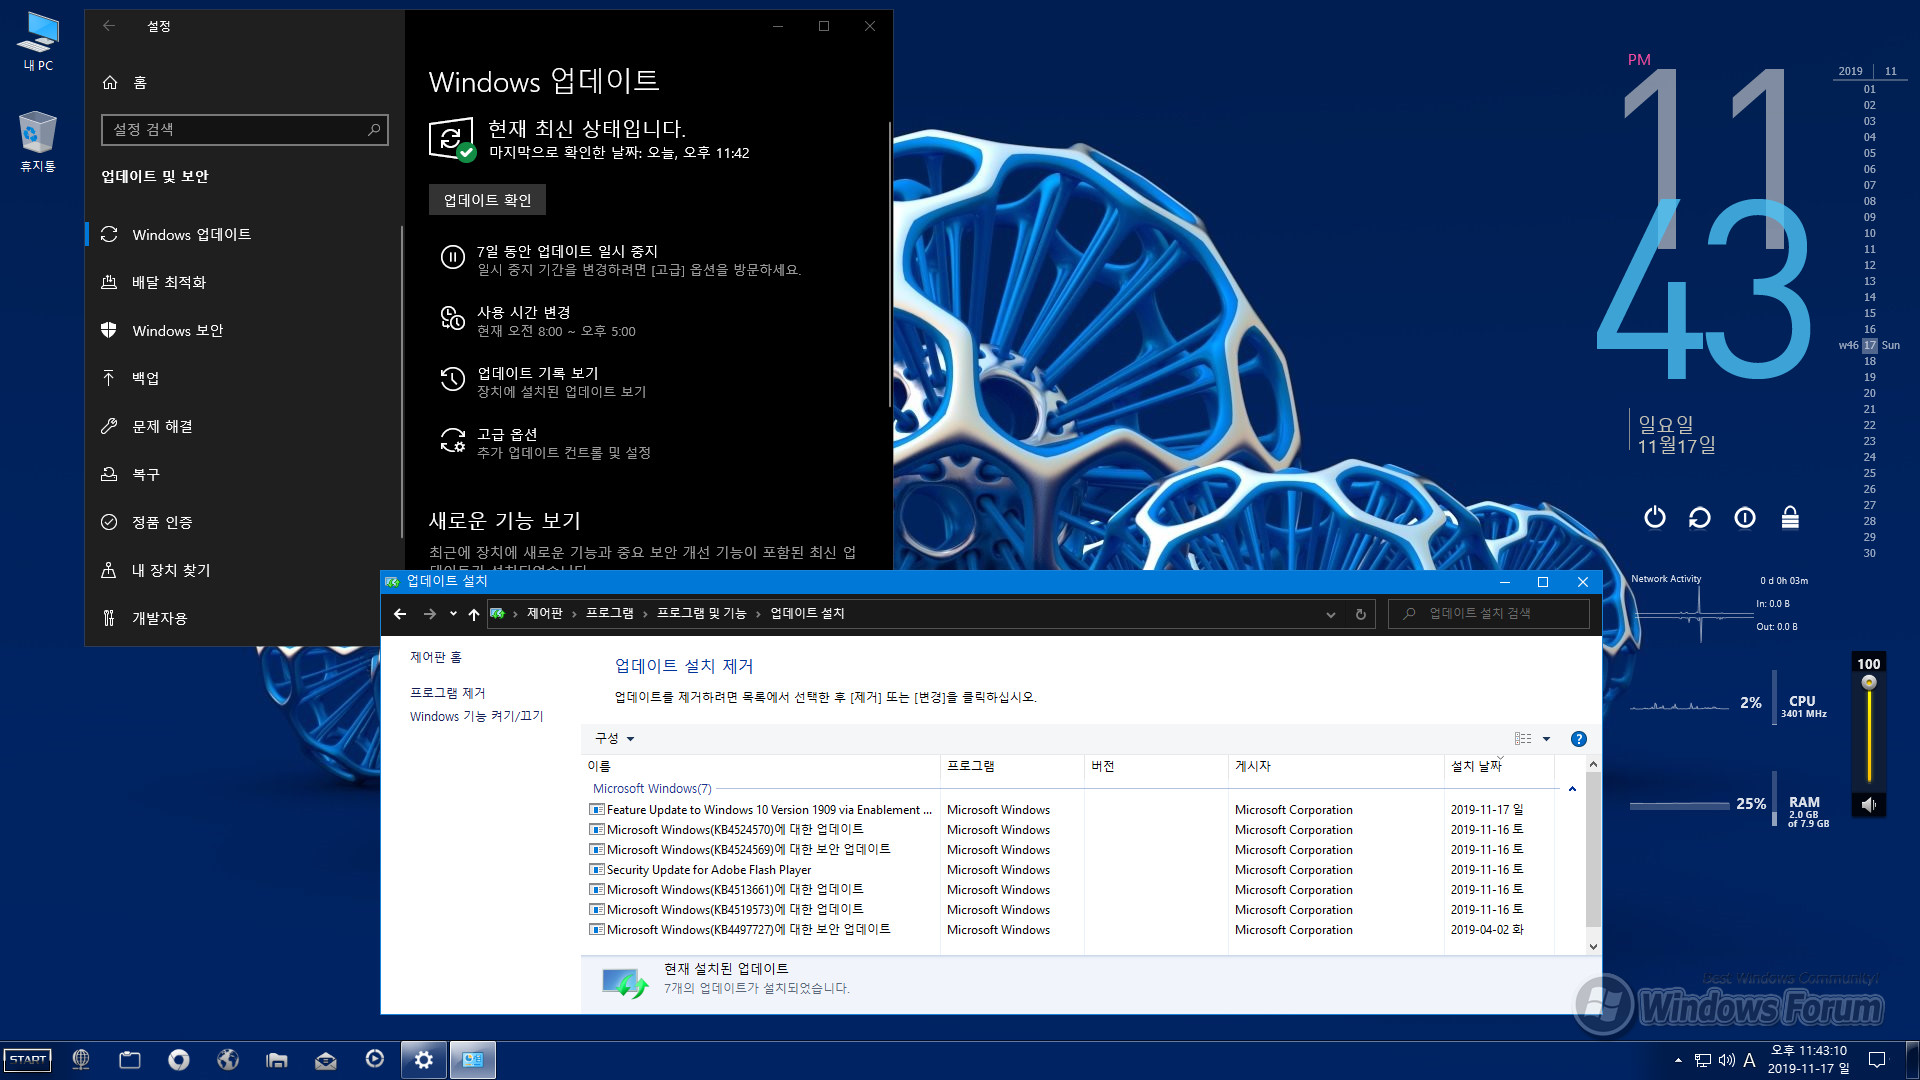 Windows 10 Enterprise ST70_0005-04.jpg